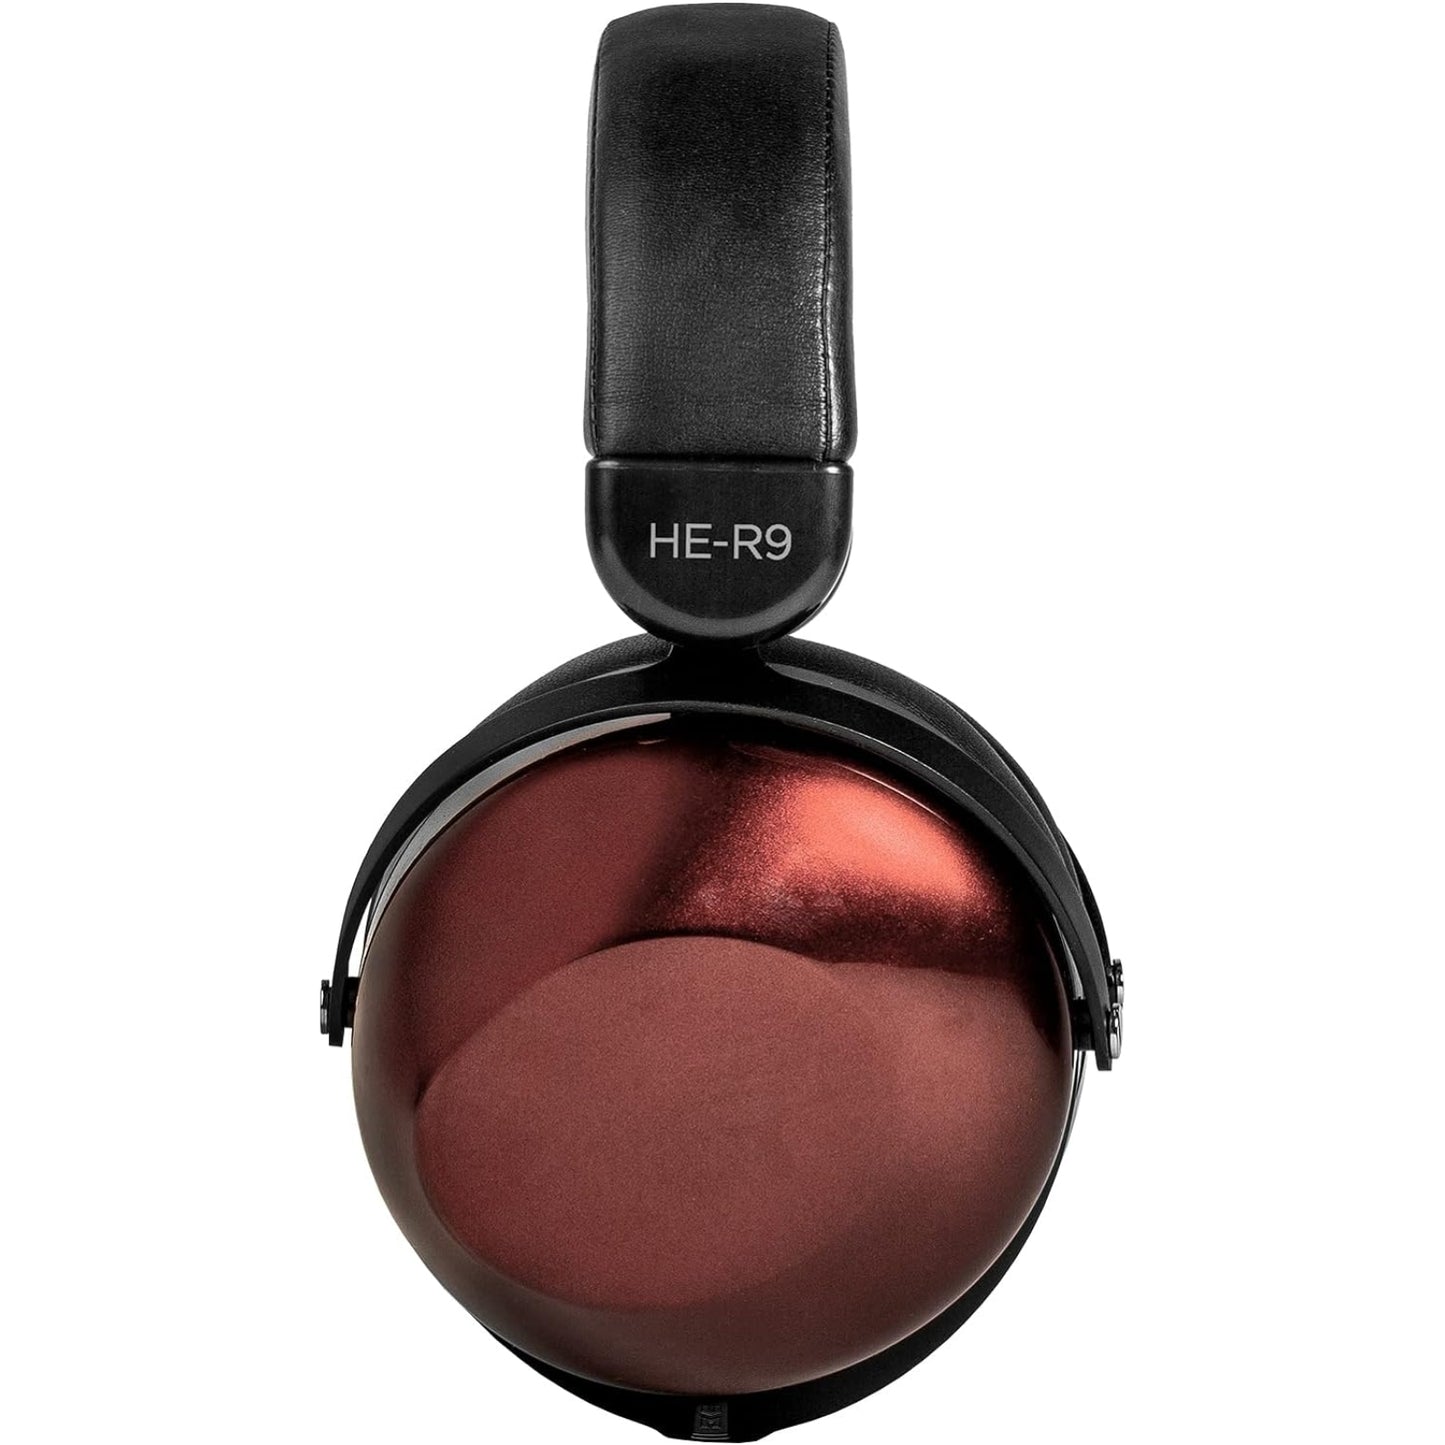 Hifiman HE-R9 Over-Ear Headphones